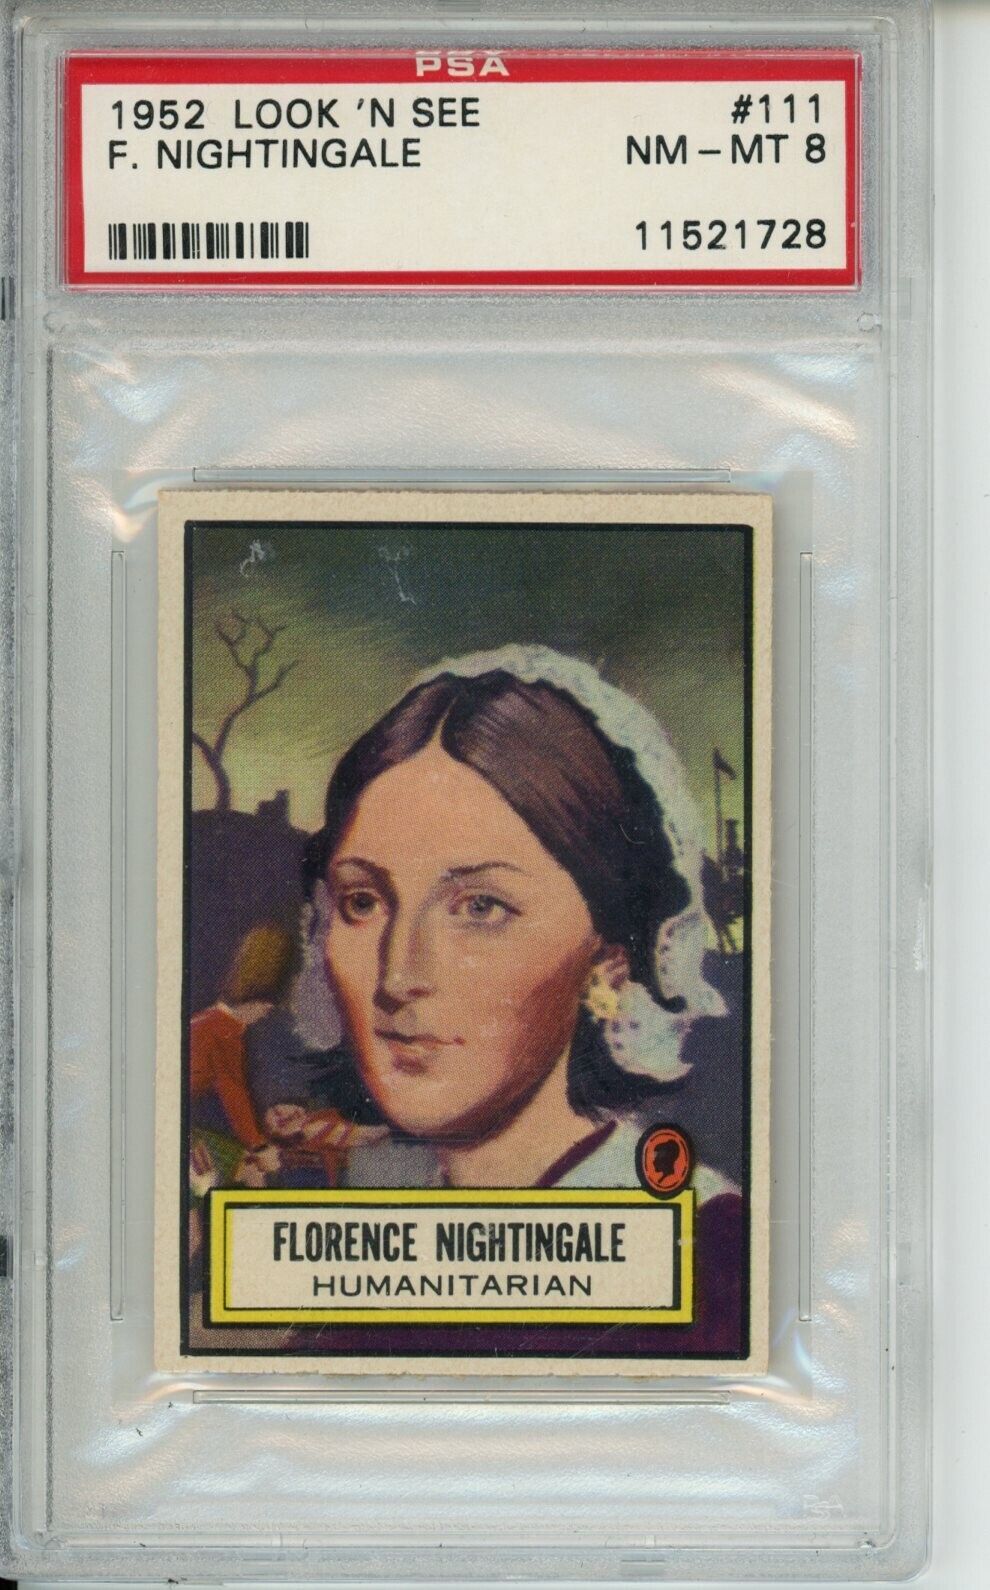 1952 Look n See #111 Florence Nightingale NM-MT PSA 8 Low Population